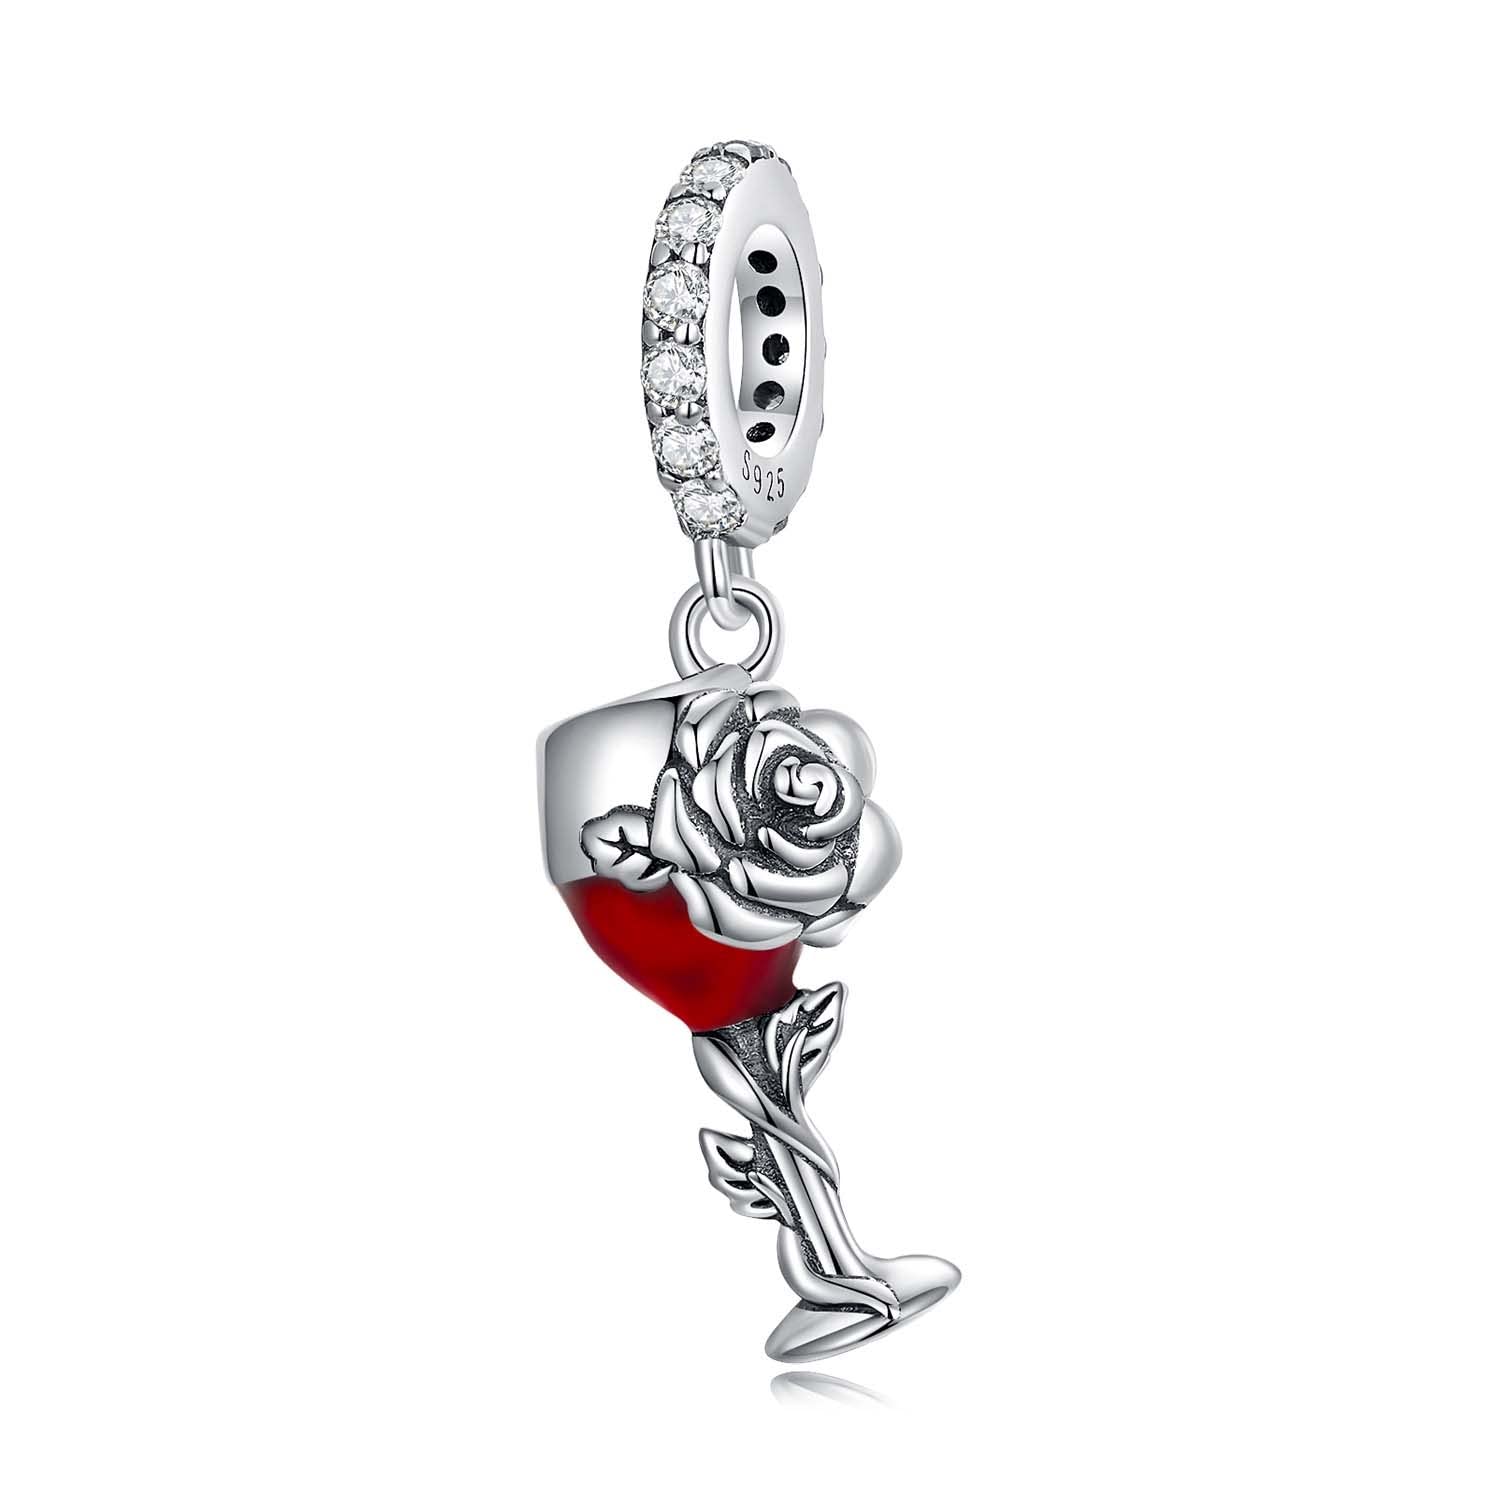 DYXIA 925 Silber Rose Weinglas Anhänger Charm passend für Pandora, Biagi, Troll, Chamilia Charm Armbänder und Halsketten Mädchen Schmuck SCC2355